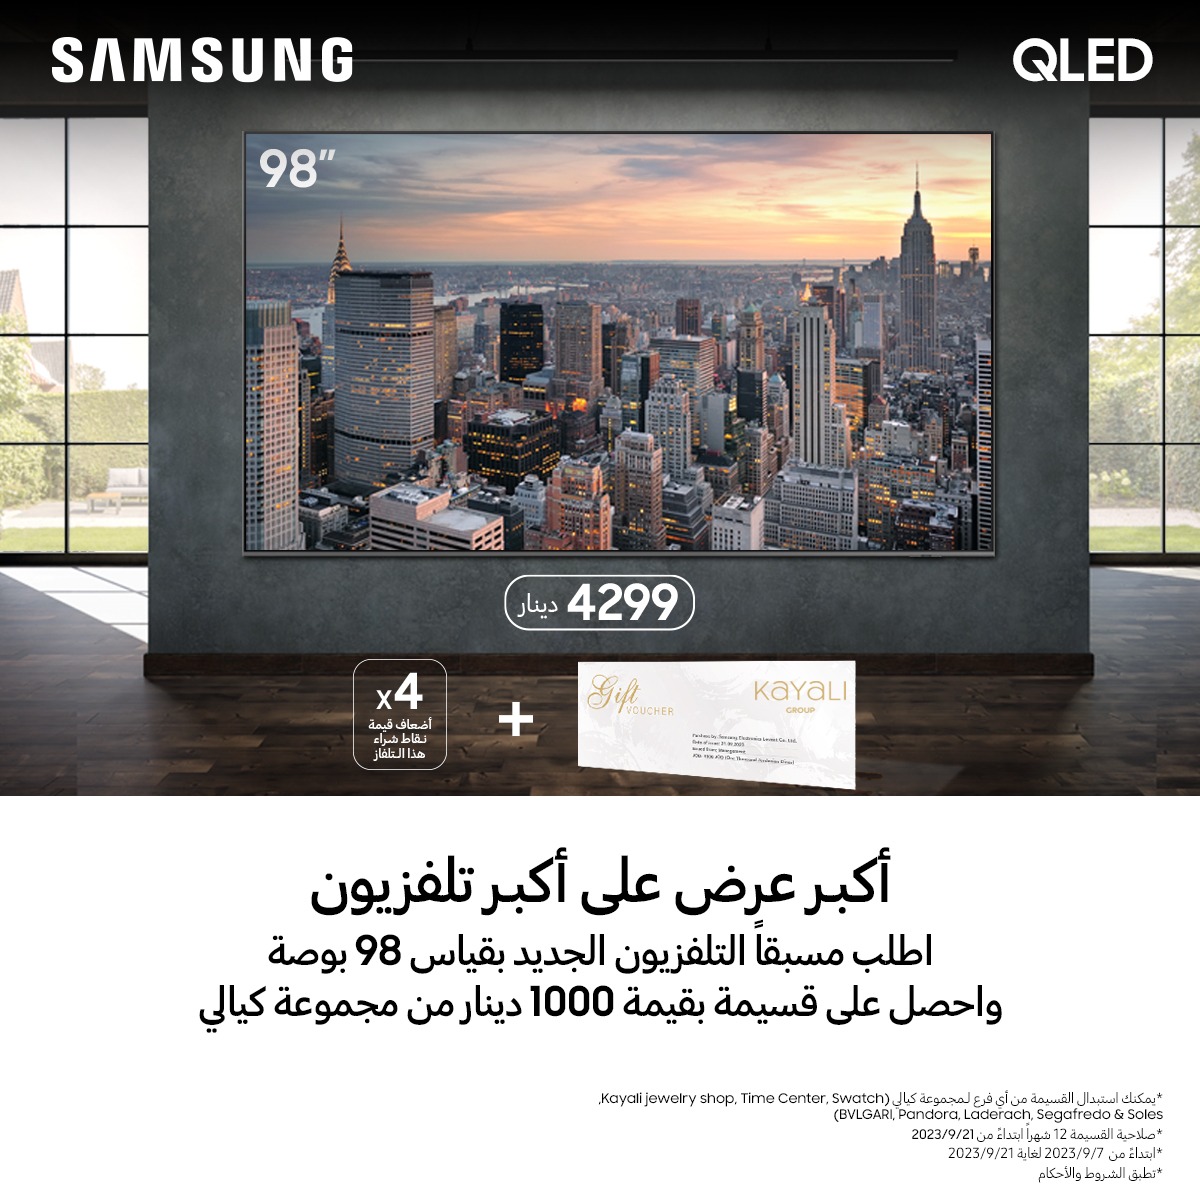 سامسونج إلكترونيكس المشرق العربي تطلق أكبر عرض على أكبر تلفاز مع حملة الطلب المسبق بسعر مميز وهدية قيمة على تلفاز QLED 4K قياس 98